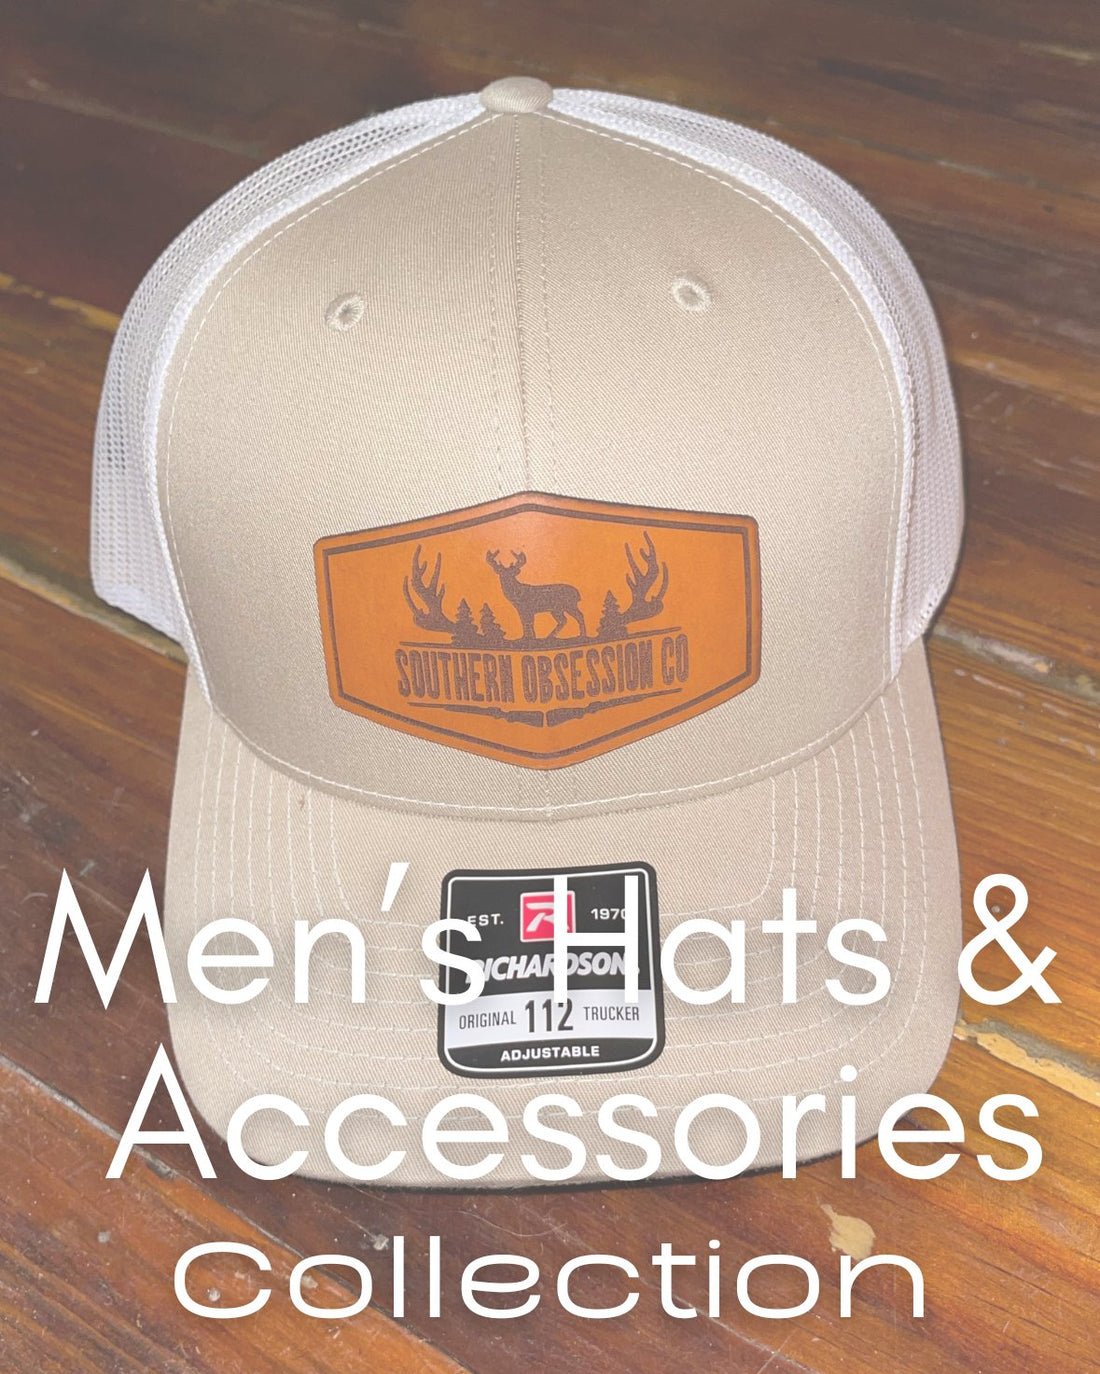  Men Hats & Accessories